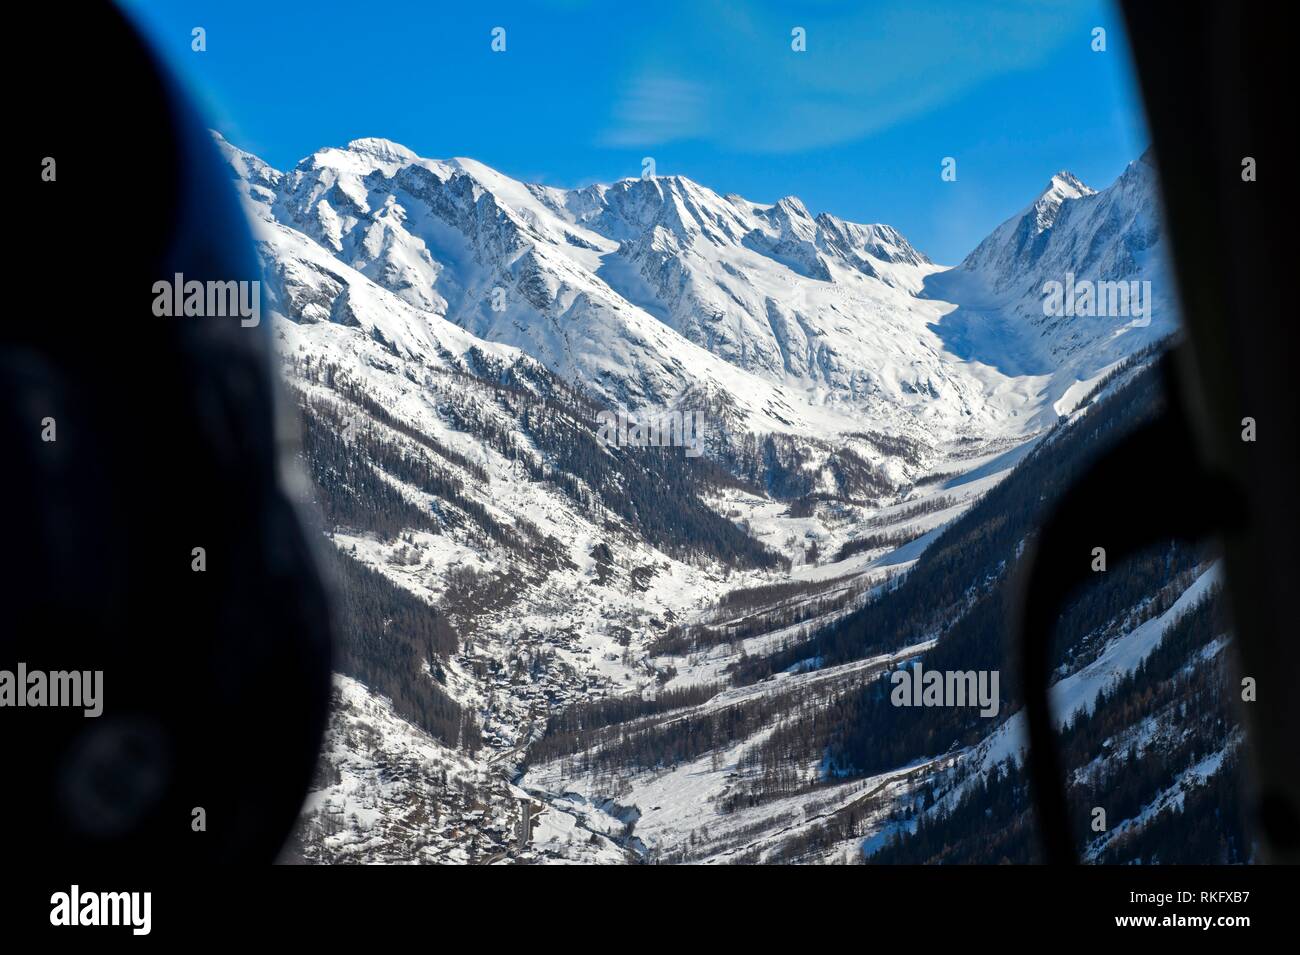 Vue aérienne d'un hélicoptère à travers la vallée d'Loetschnetal les neiges des Alpes Bernoises, Loetschental, Valais, Suisse. Banque D'Images